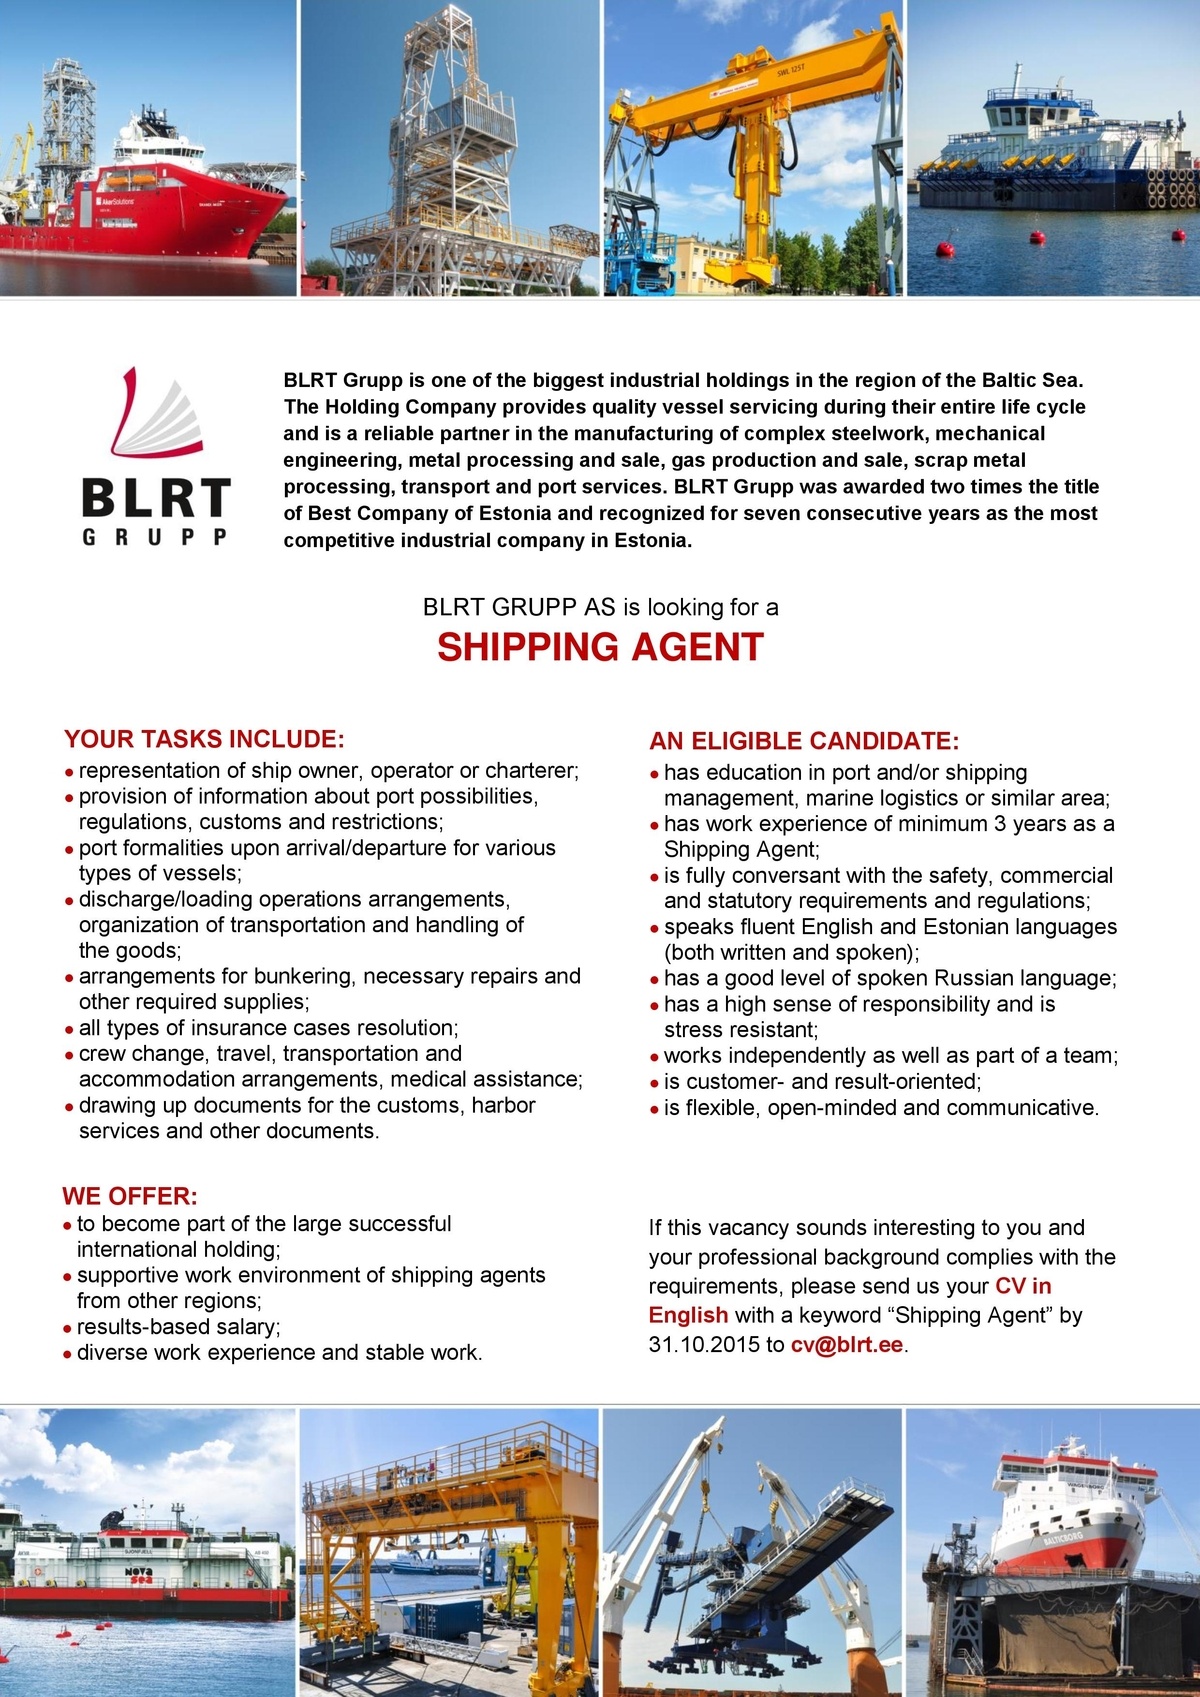 BLRT GRUPP AS Shipping Agent